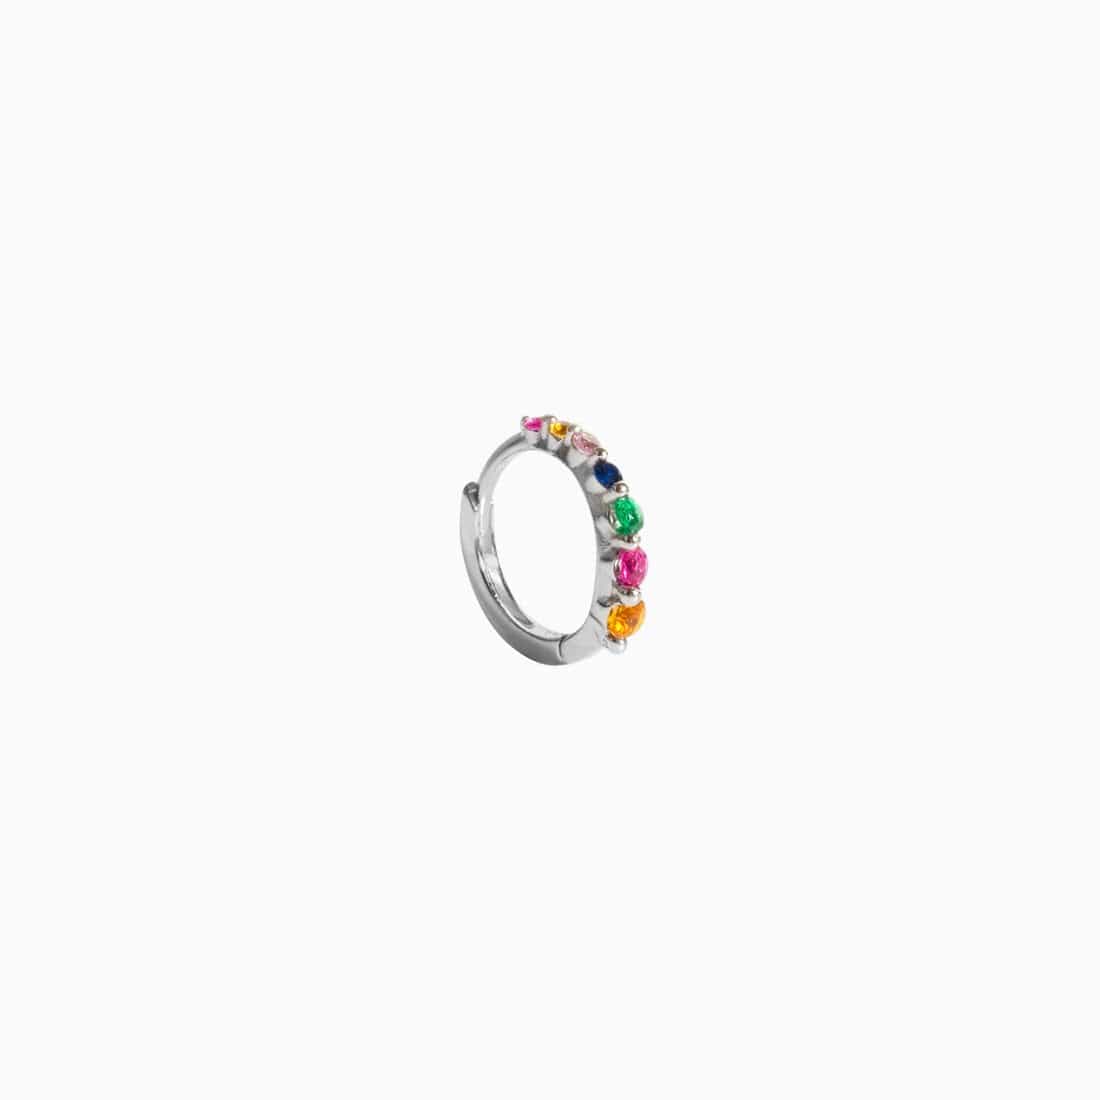 Degrade Ring Multicolor Zirconias Silver Piercing